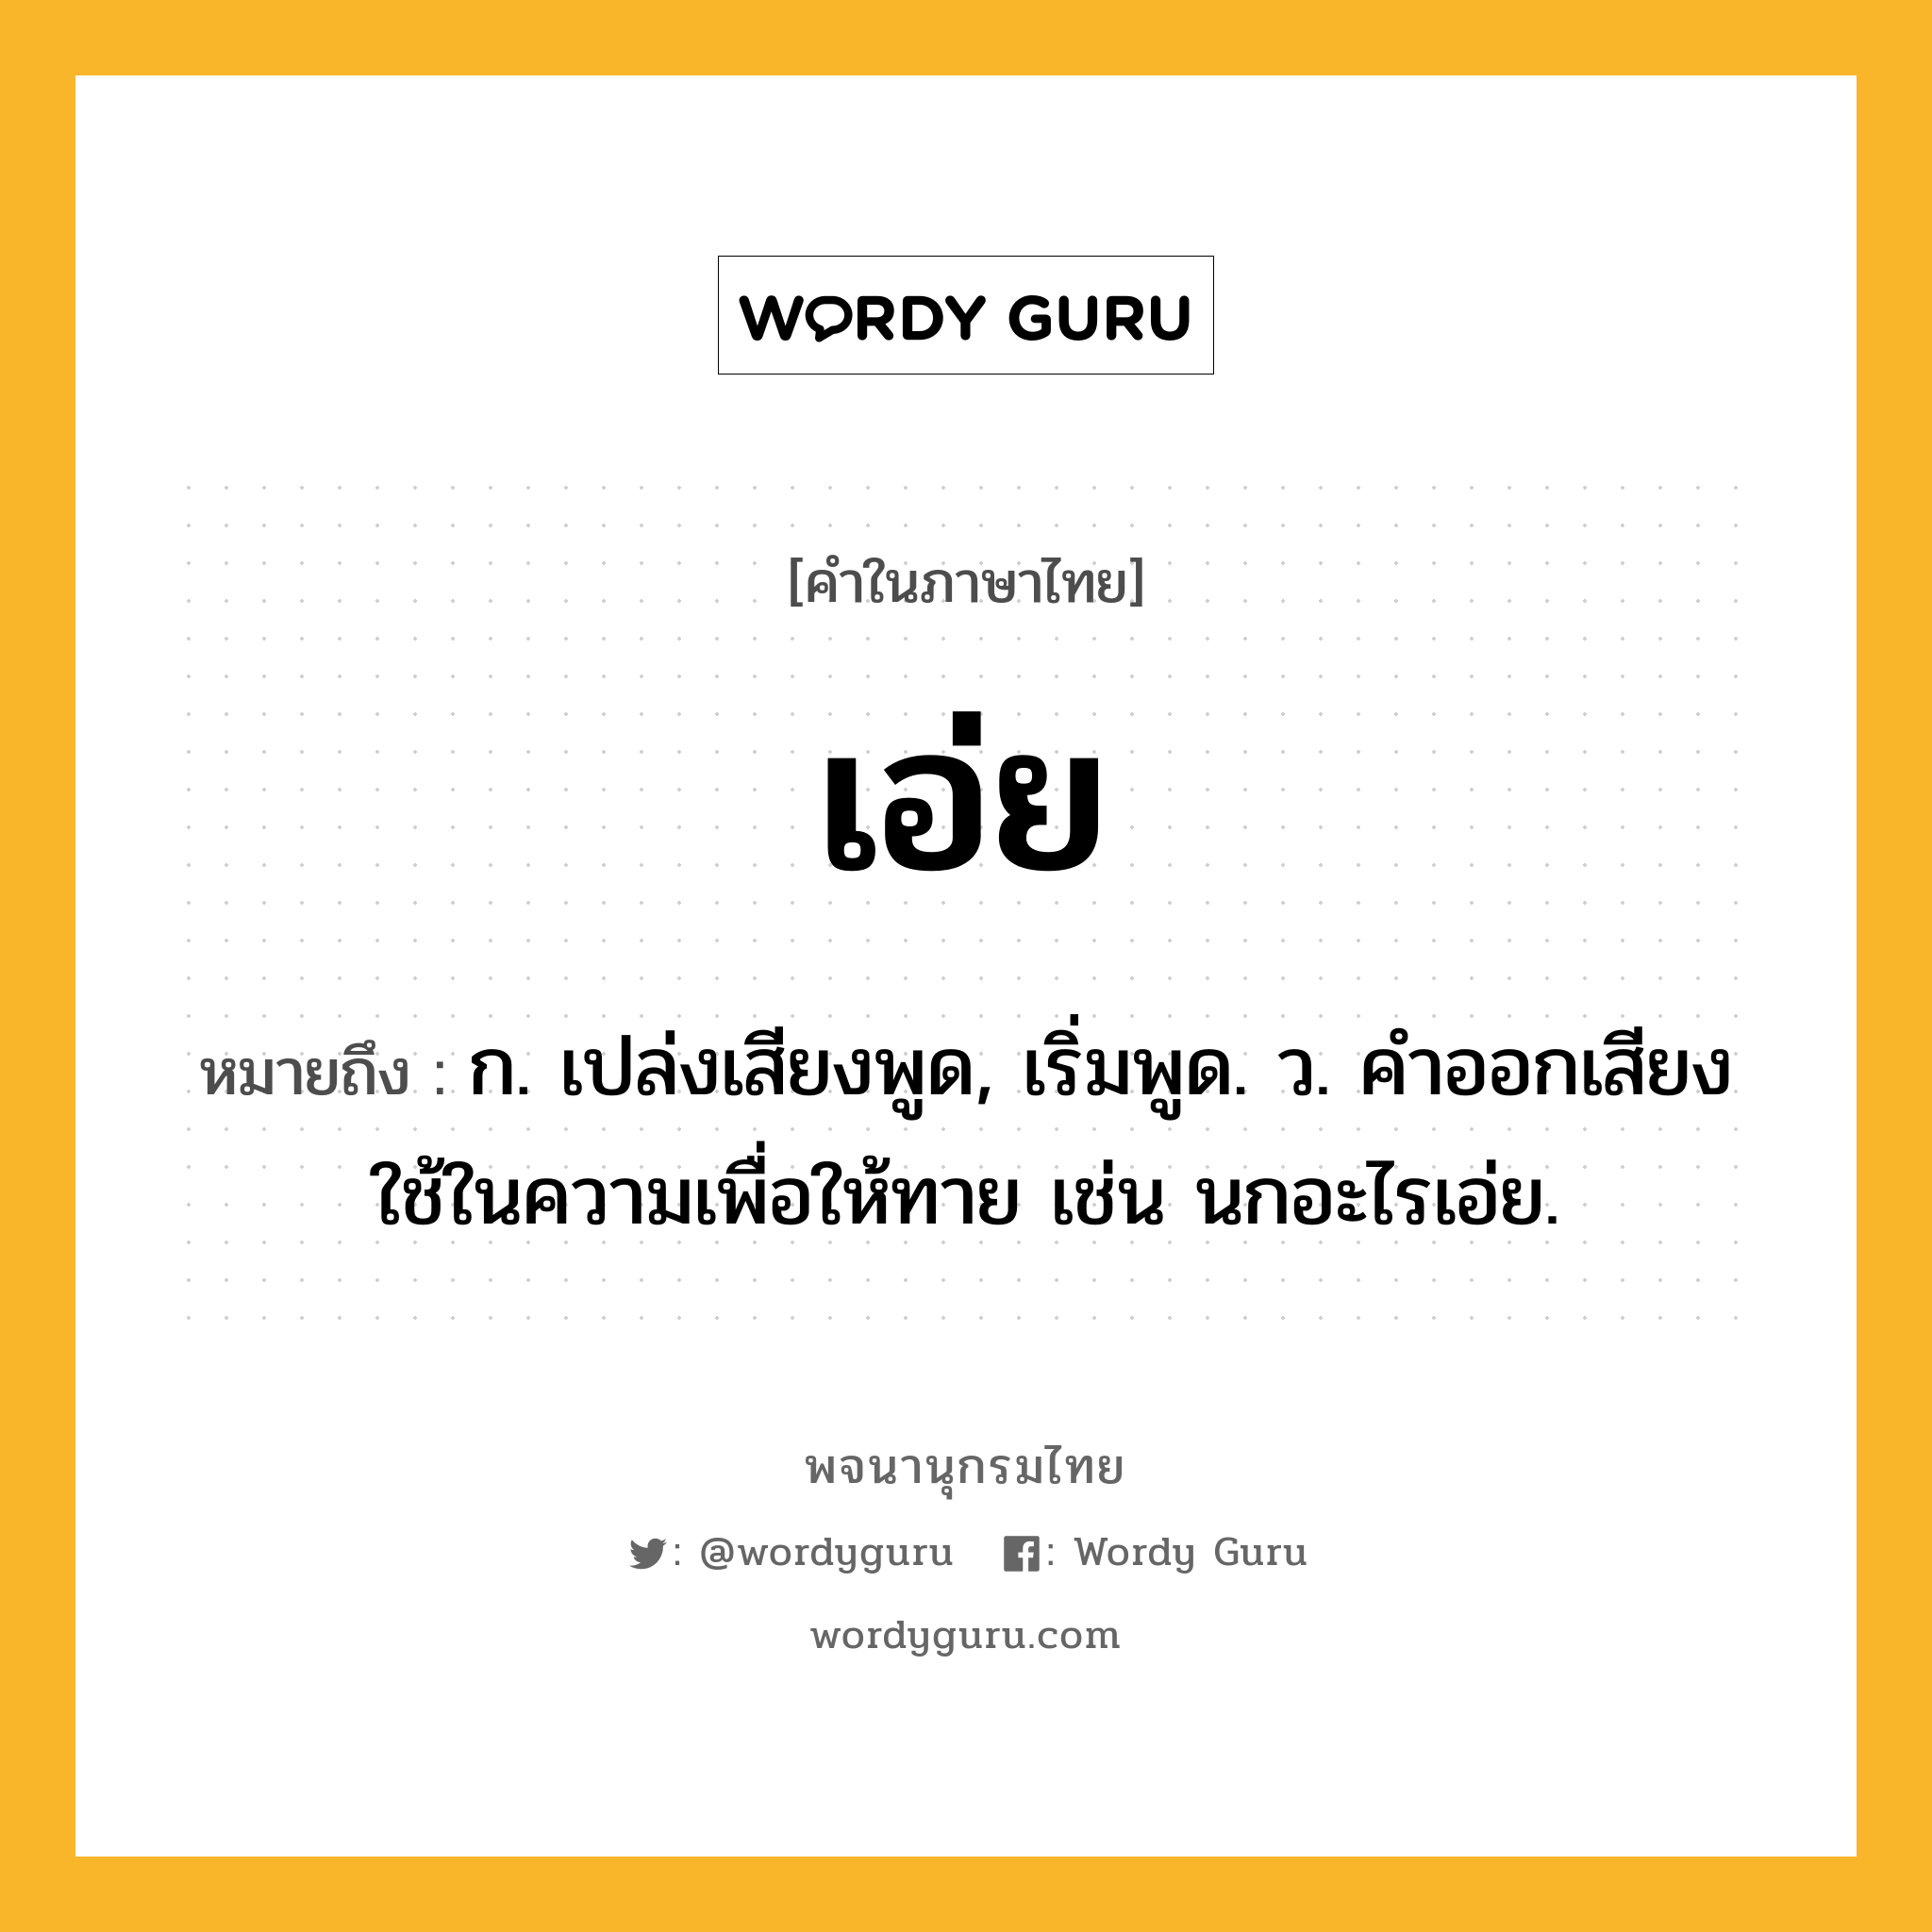 เอ่ย ความหมาย หมายถึงอะไร?, คำในภาษาไทย เอ่ย หมายถึง ก. เปล่งเสียงพูด, เริ่มพูด. ว. คําออกเสียงใช้ในความเพื่อให้ทาย เช่น นกอะไรเอ่ย.